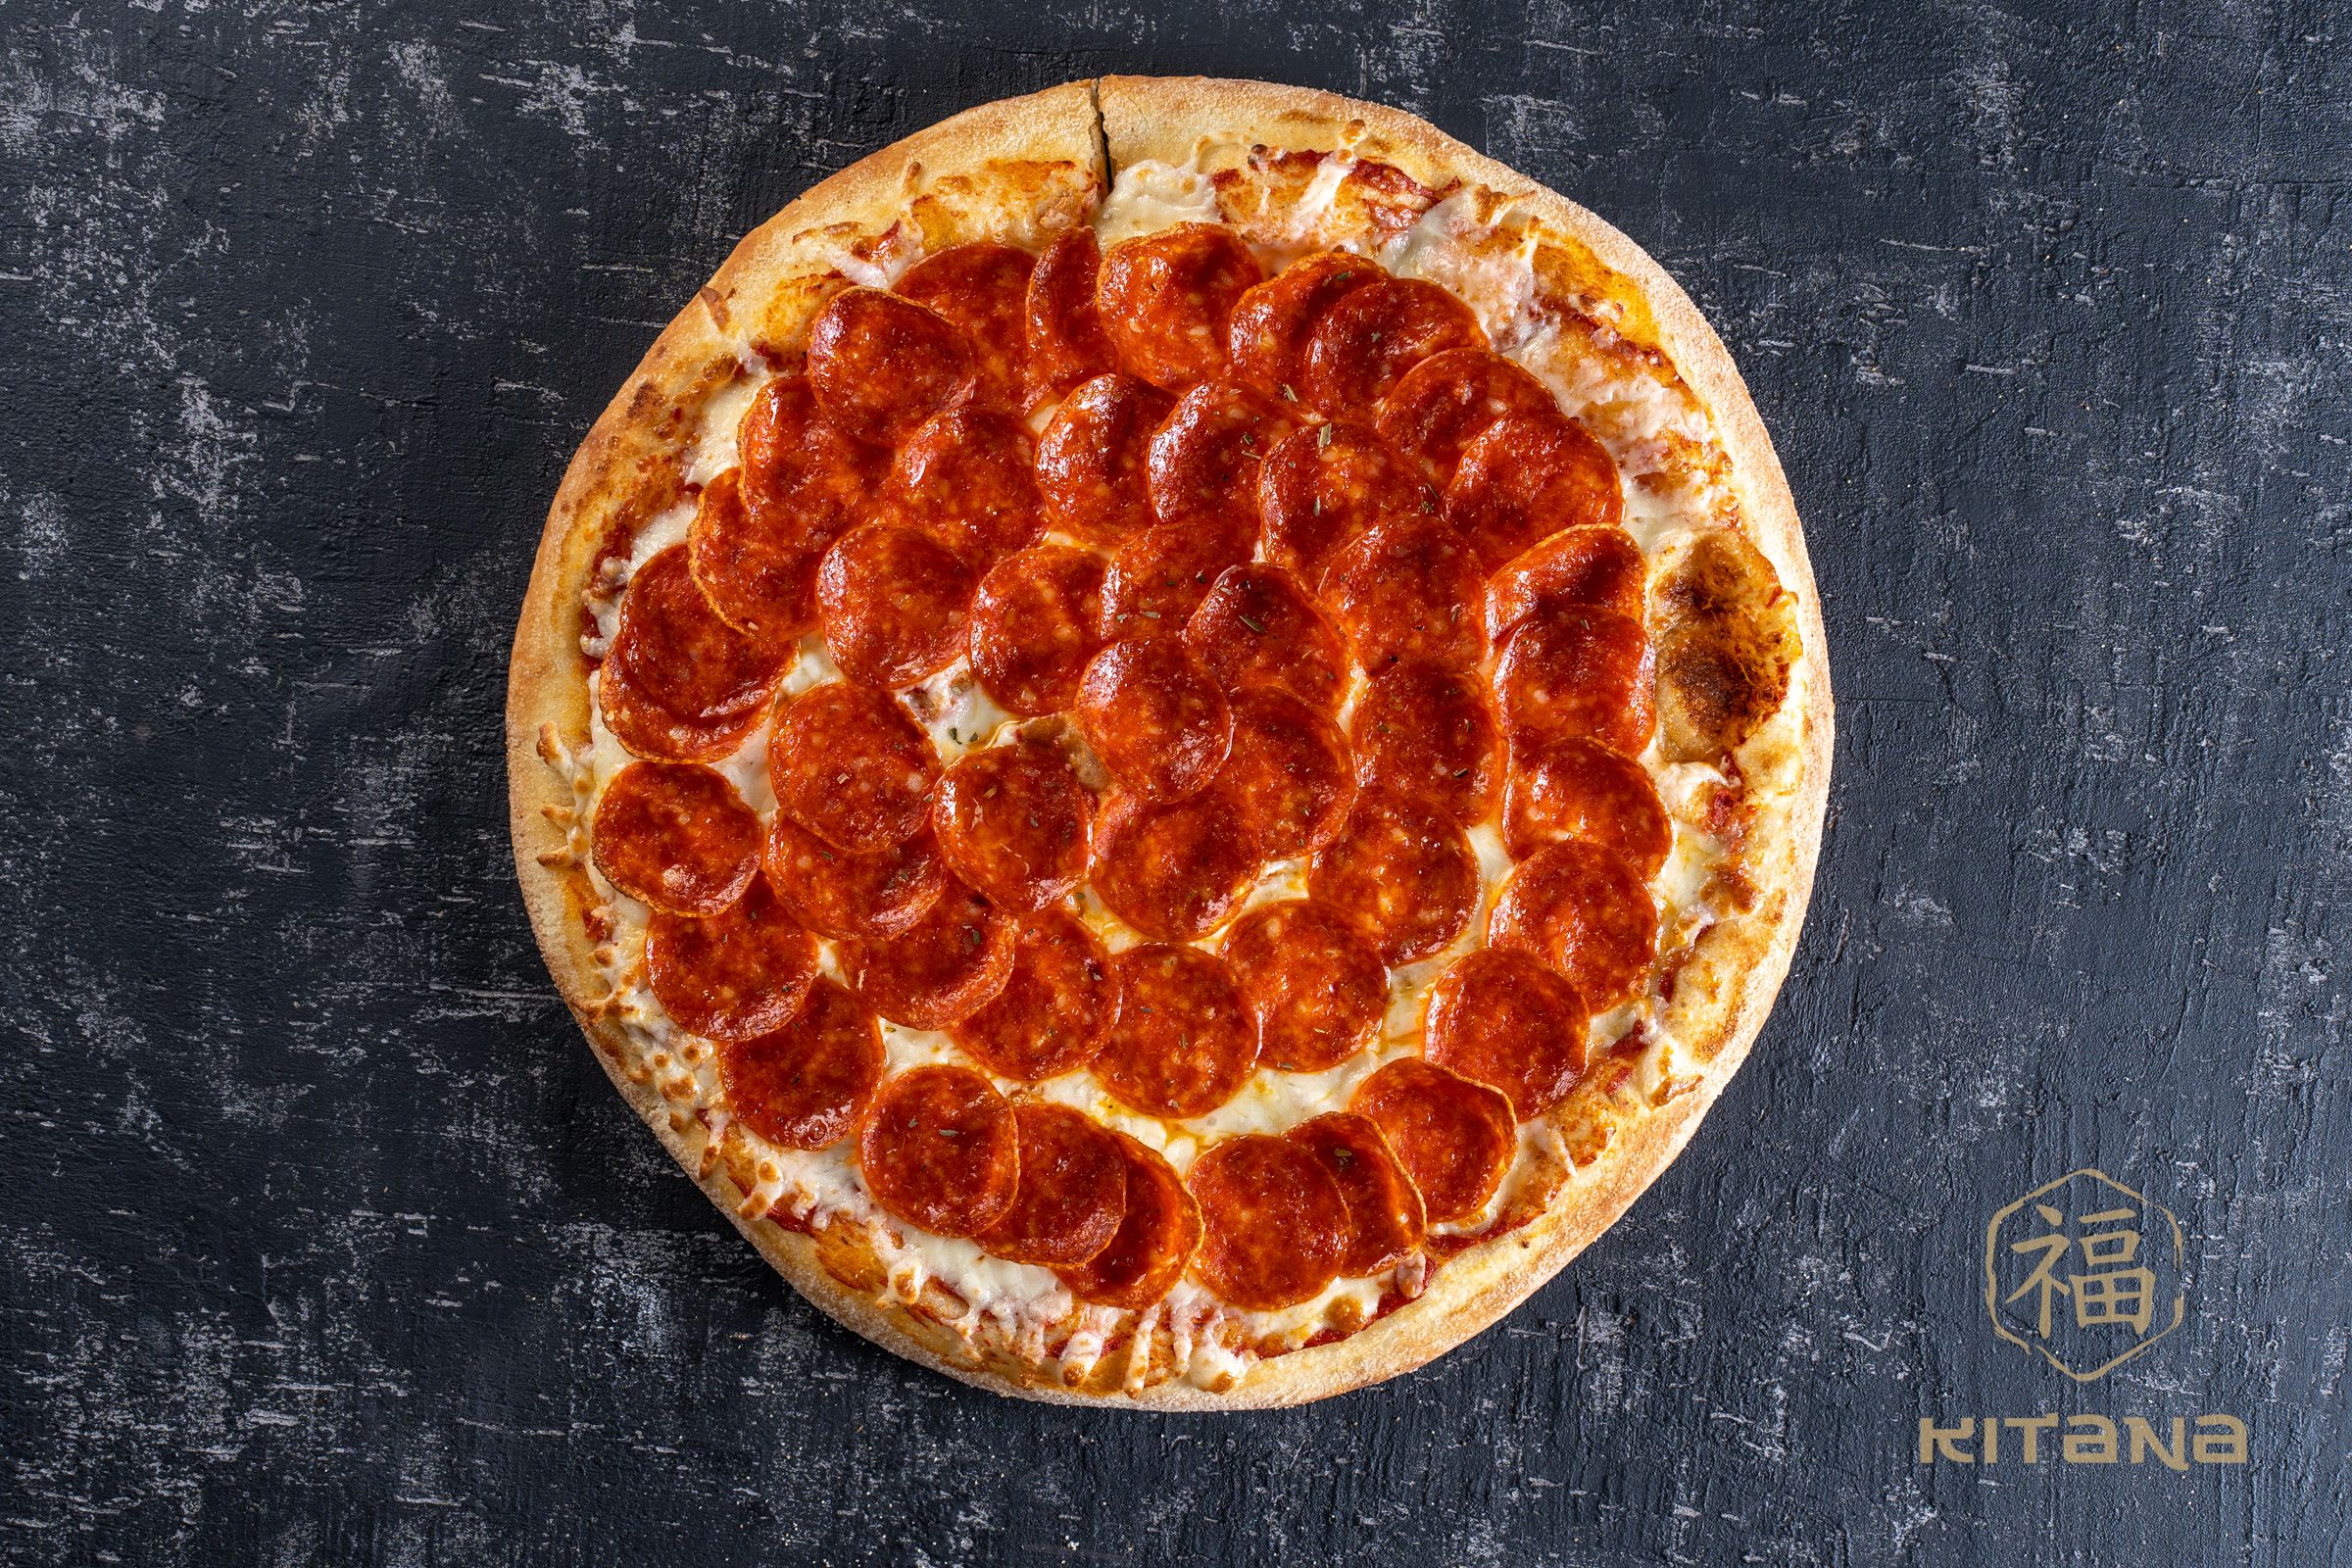 сколько калорий в одном куске пиццы пепперони из додо фото 84